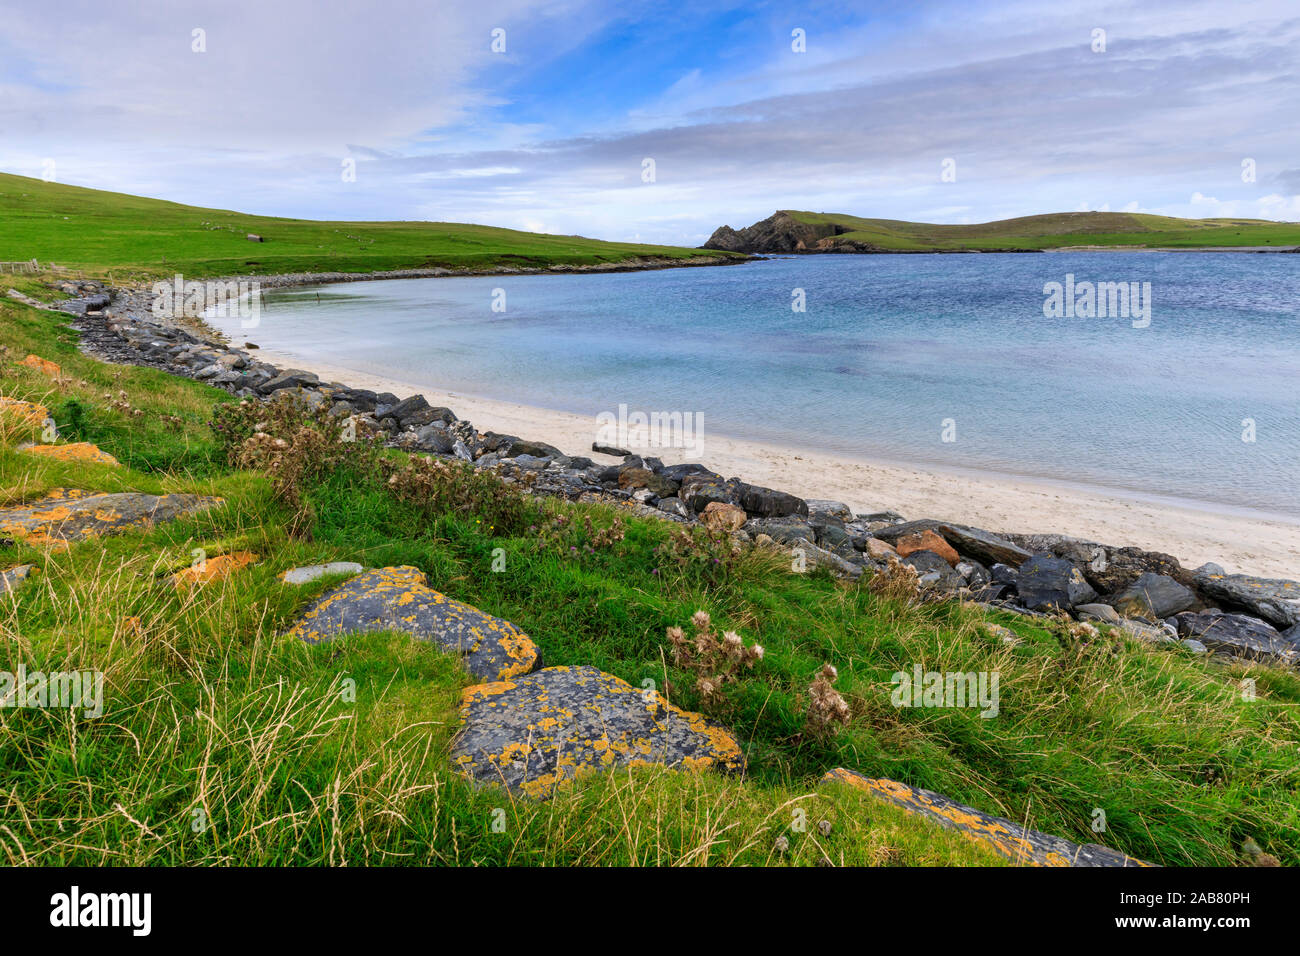 Dcim Beach, Banna DCIM, sabbia bianca e mare turchese, Papil, West Burra isola, isole Shetland Scozia, Regno Unito, Europa Foto Stock